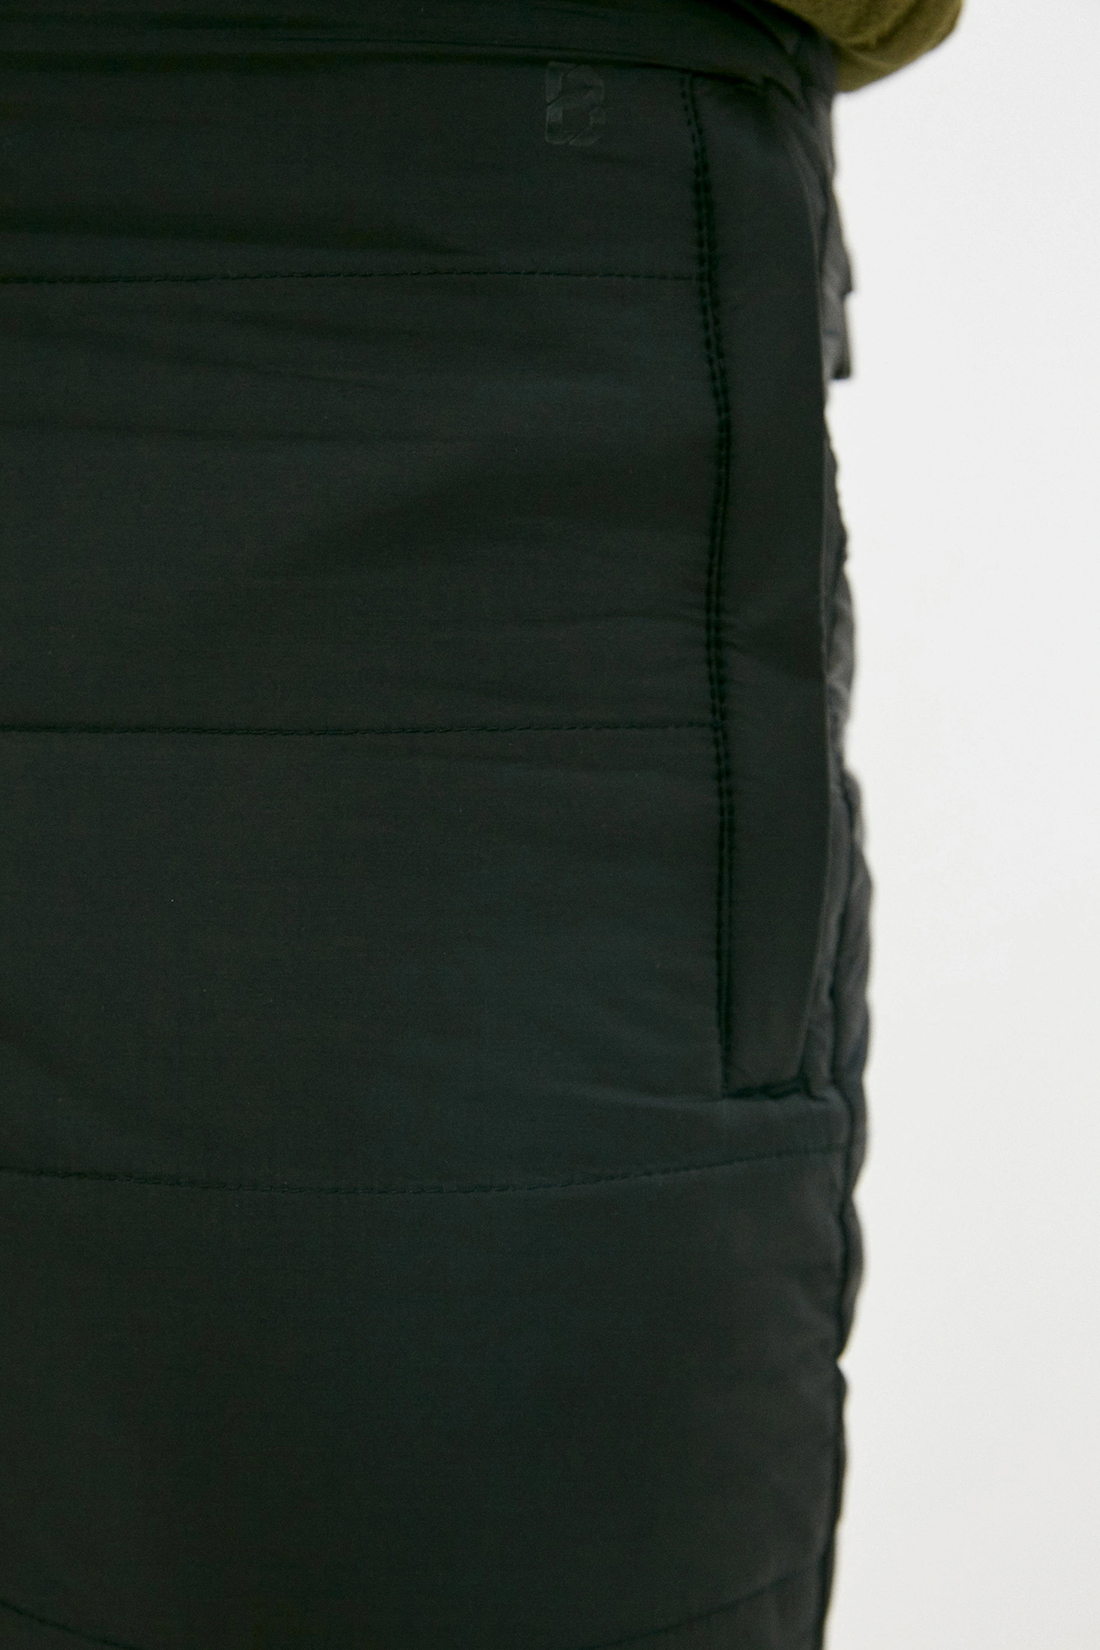 Утеплённые брюки с подкладкой из флиса (арт. baon B799522), размер 3XL, цвет черный Утеплённые брюки с подкладкой из флиса (арт. baon B799522) - фото 3